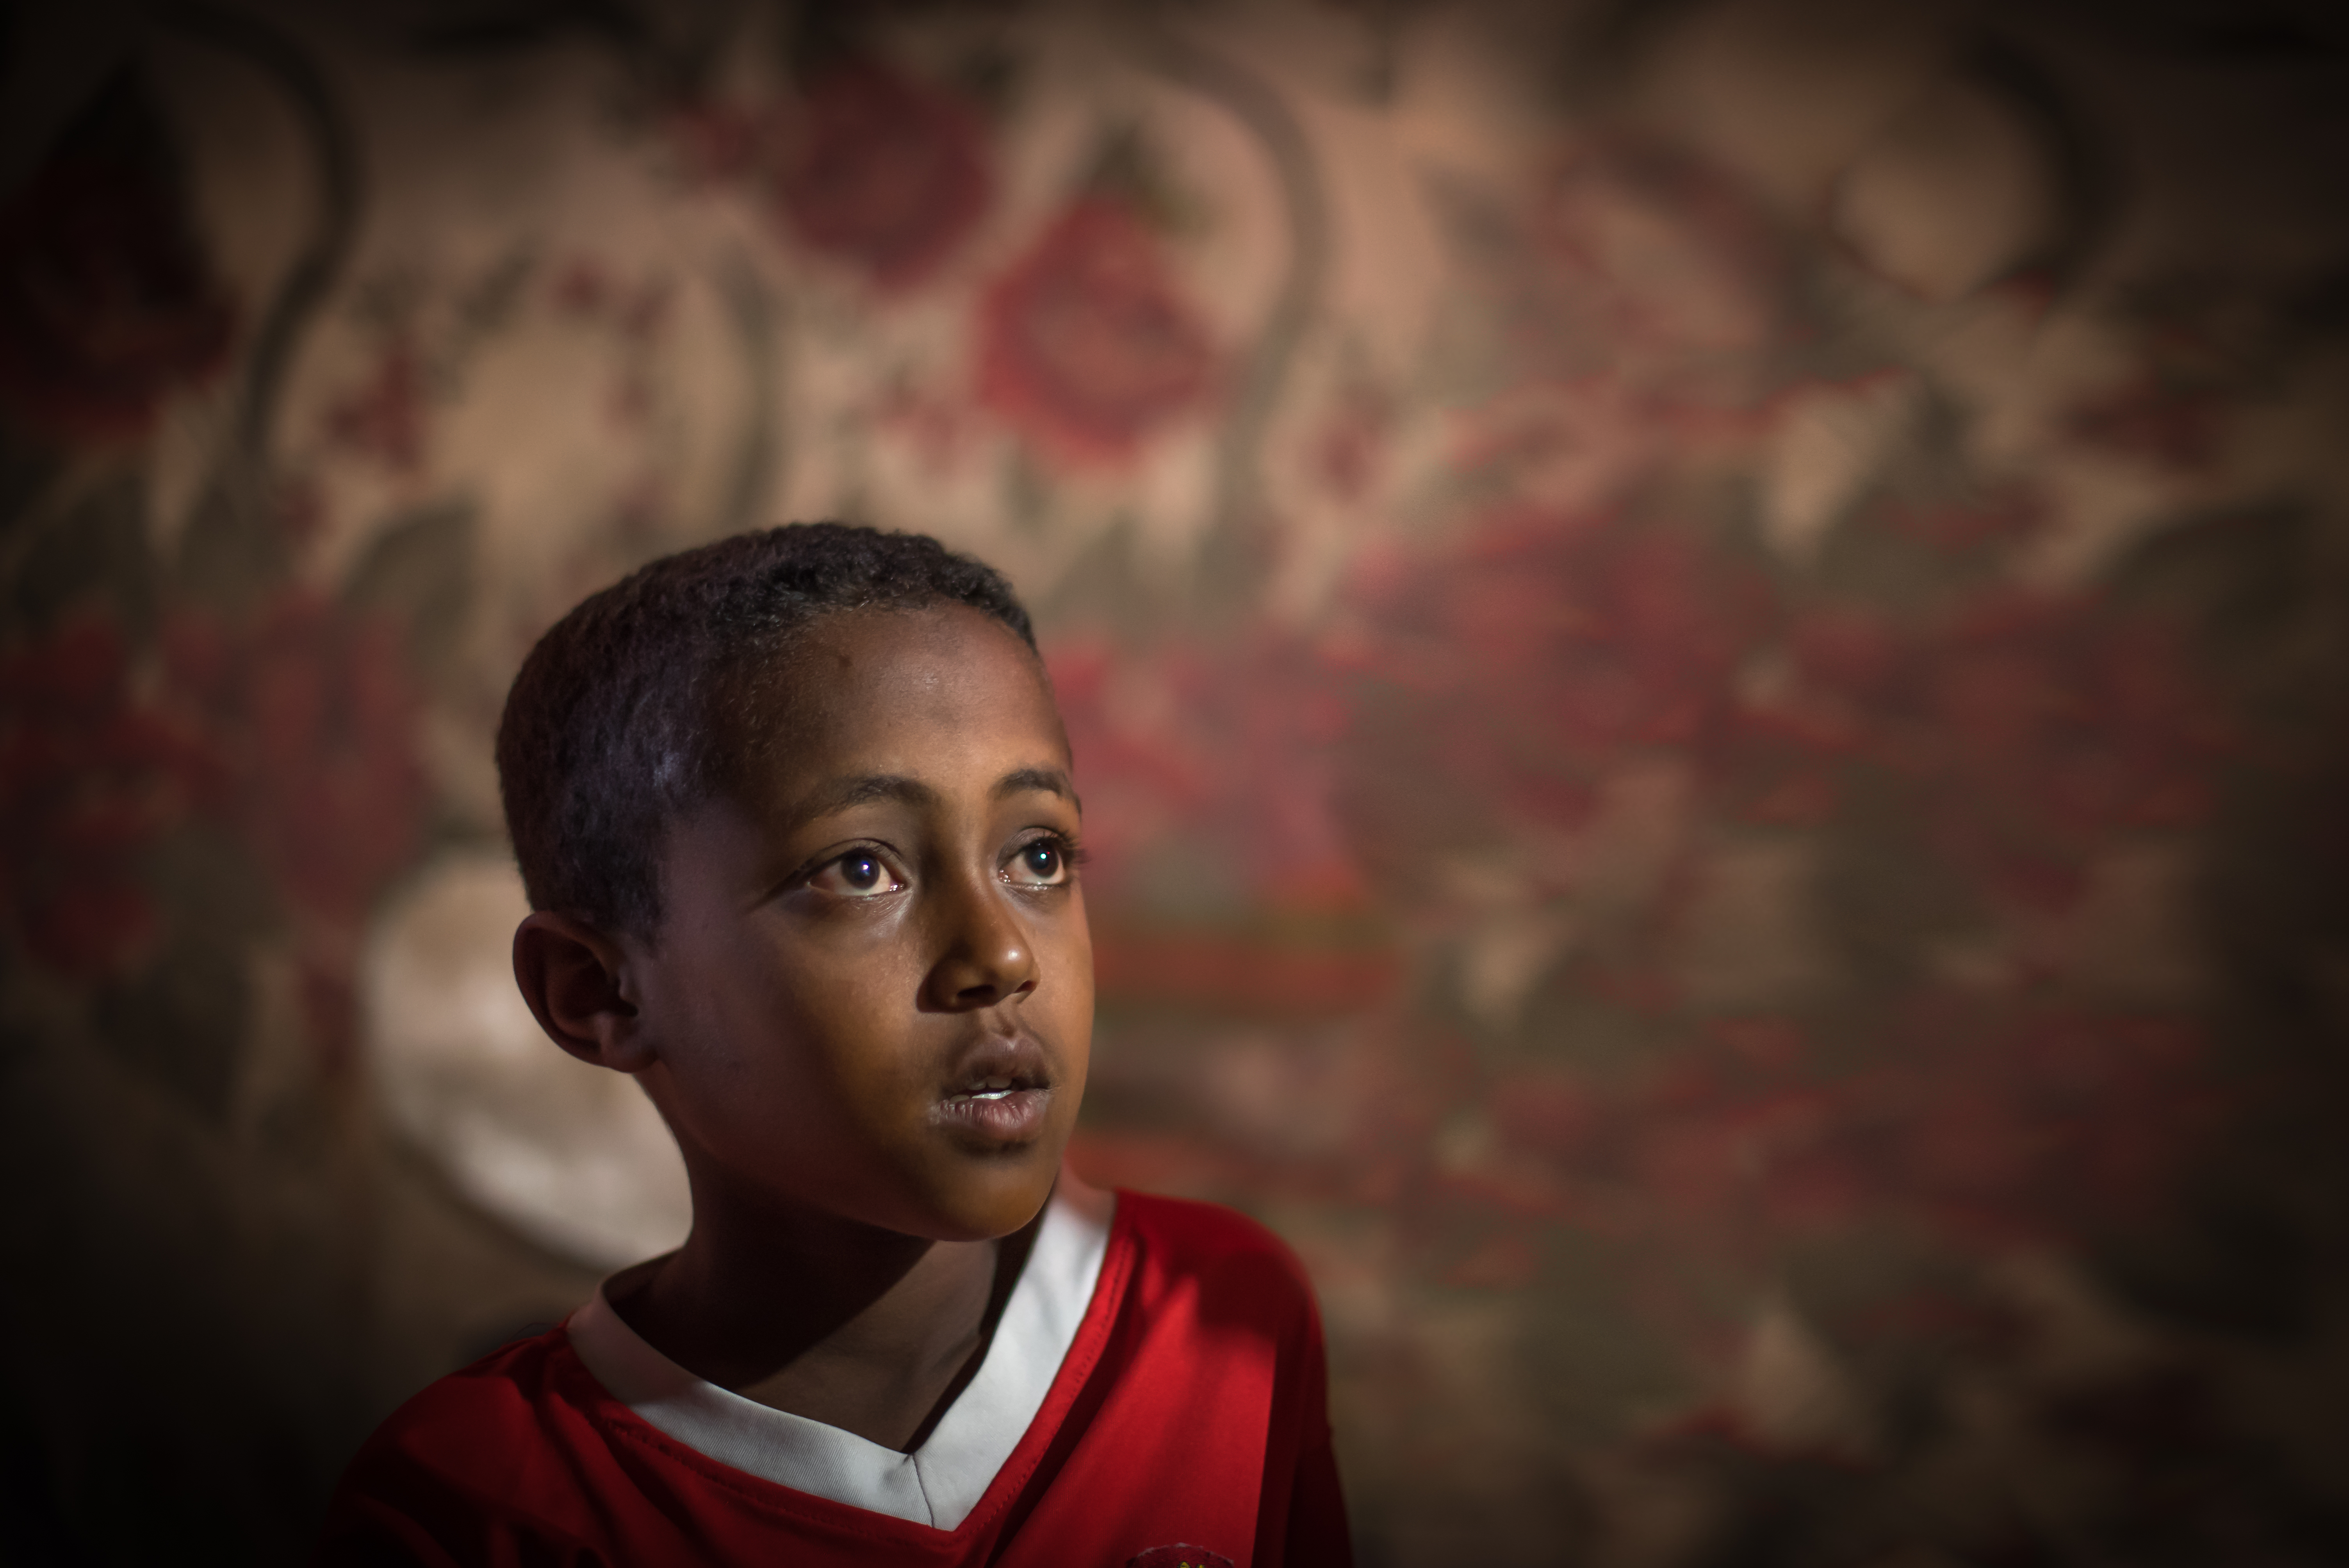 Abdulaziz Ahmed Mehamed i Etiopien blev föräldralös på grund av aids. Han bor tillsammans med sin mormor. Han går i skola tack vare Finska Missionssällskapet. "Mitt favoritämne är samhällskunskap"